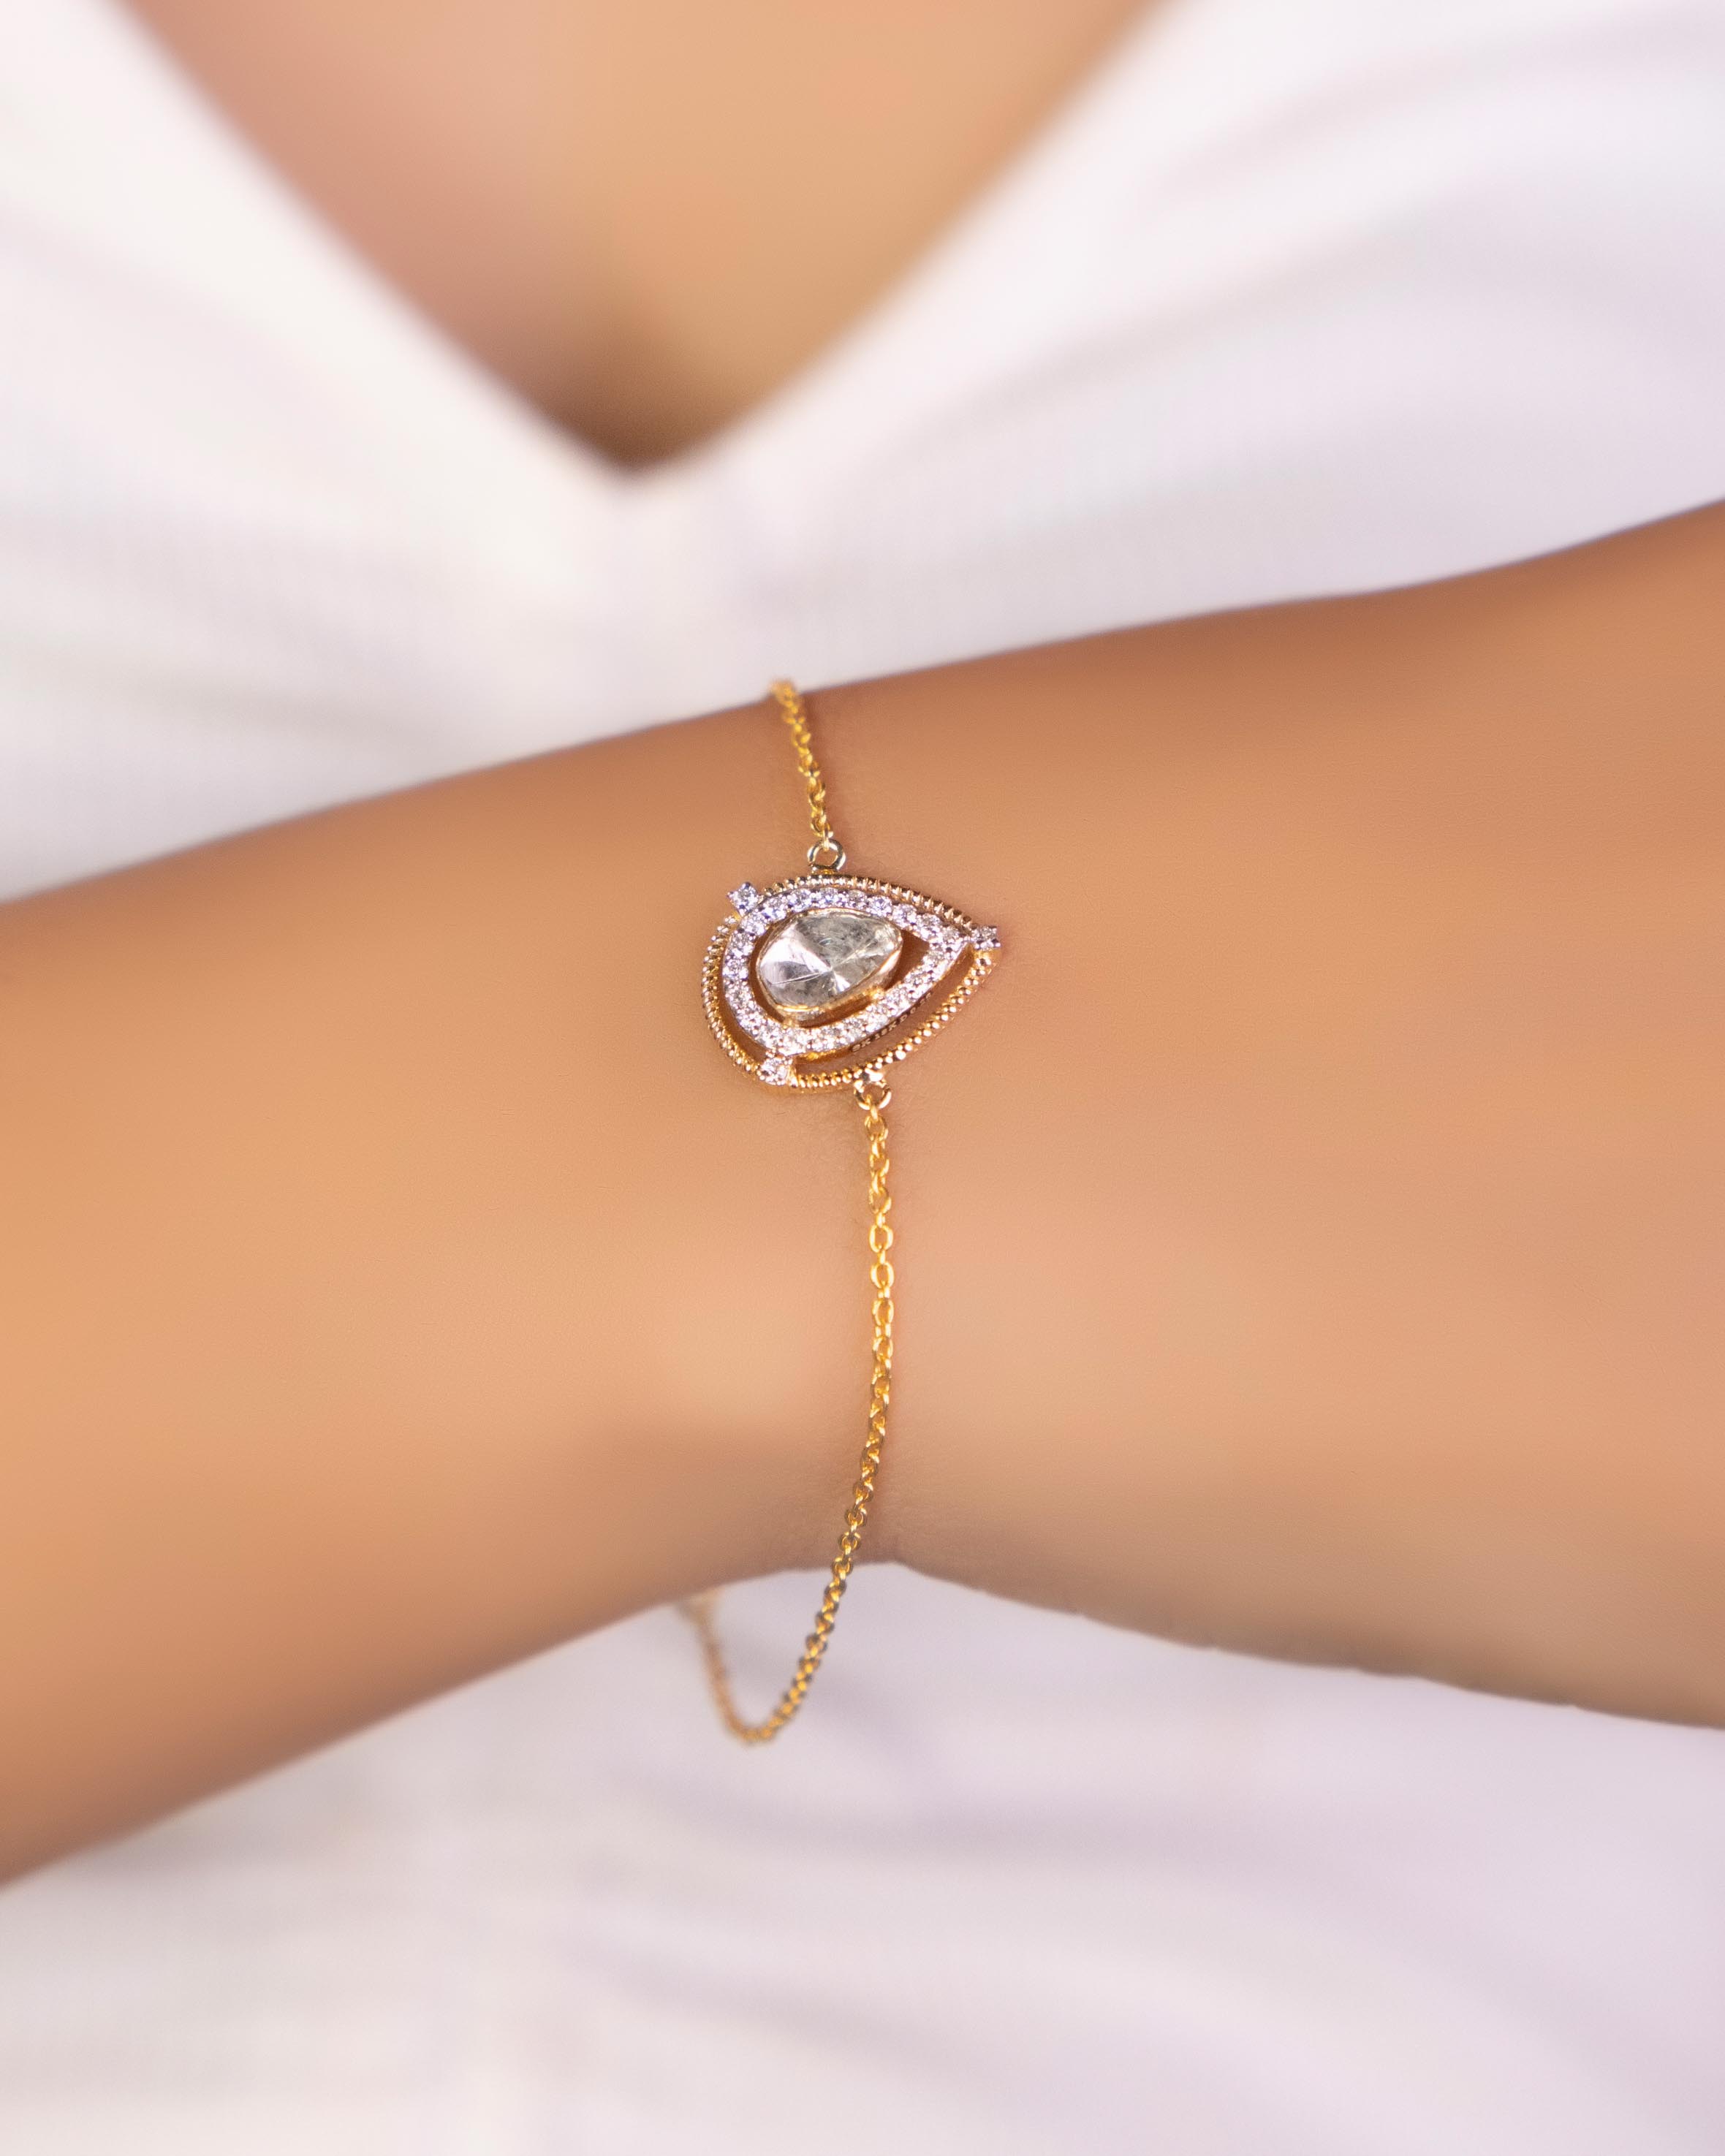 Luxe Minimal 1 | Bracelet | Farry Boutique